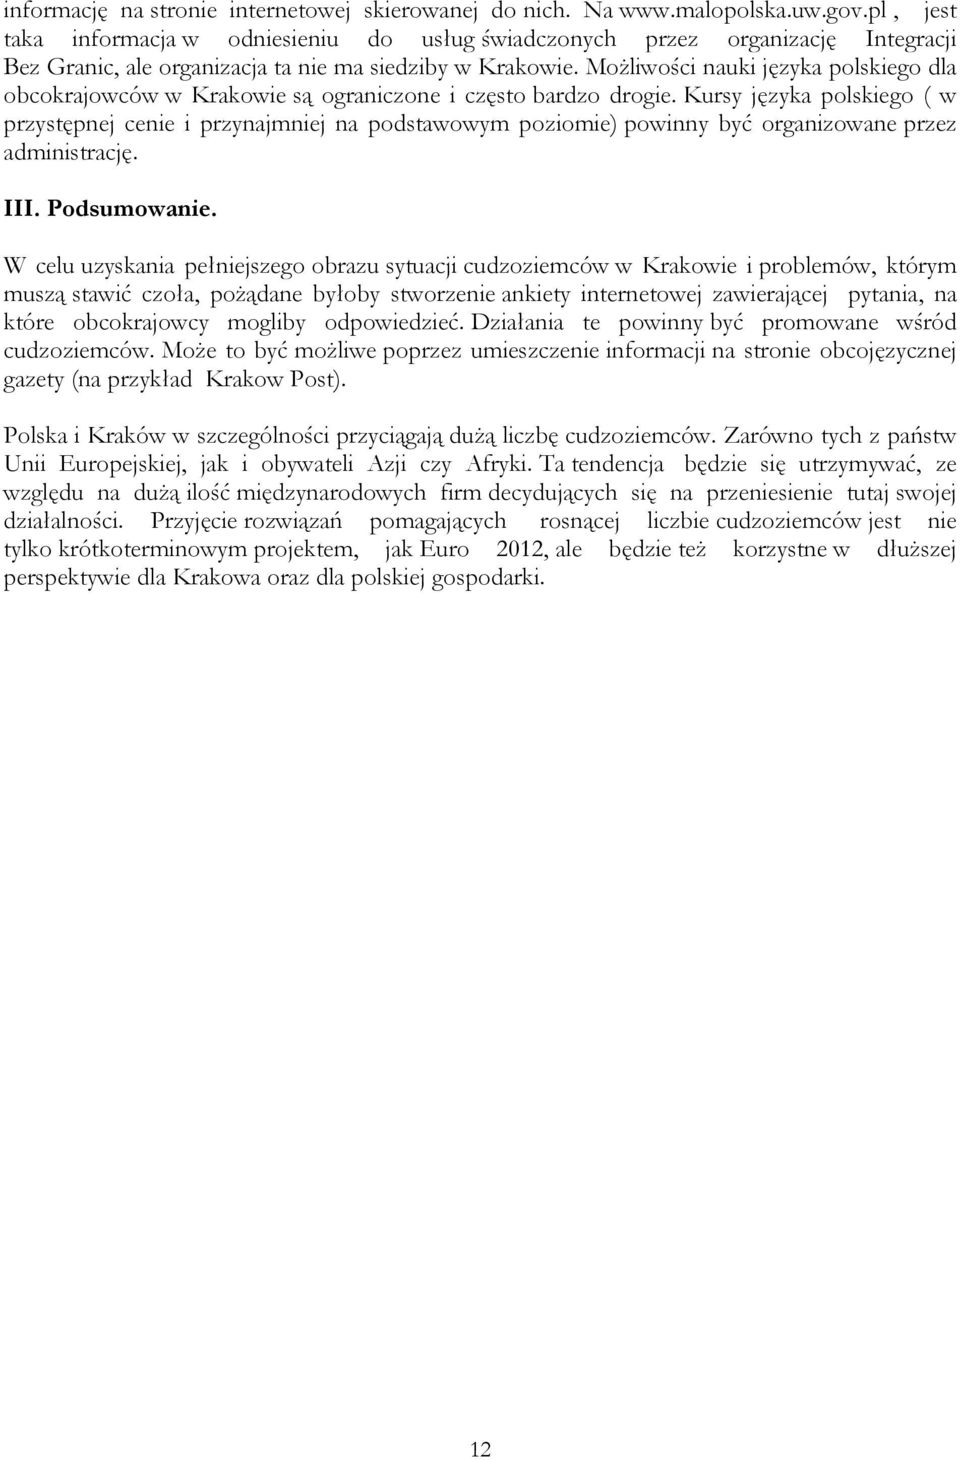 Możliwości nauki języka polskiego dla obcokrajowców w Krakowie są ograniczone i często bardzo drogie.